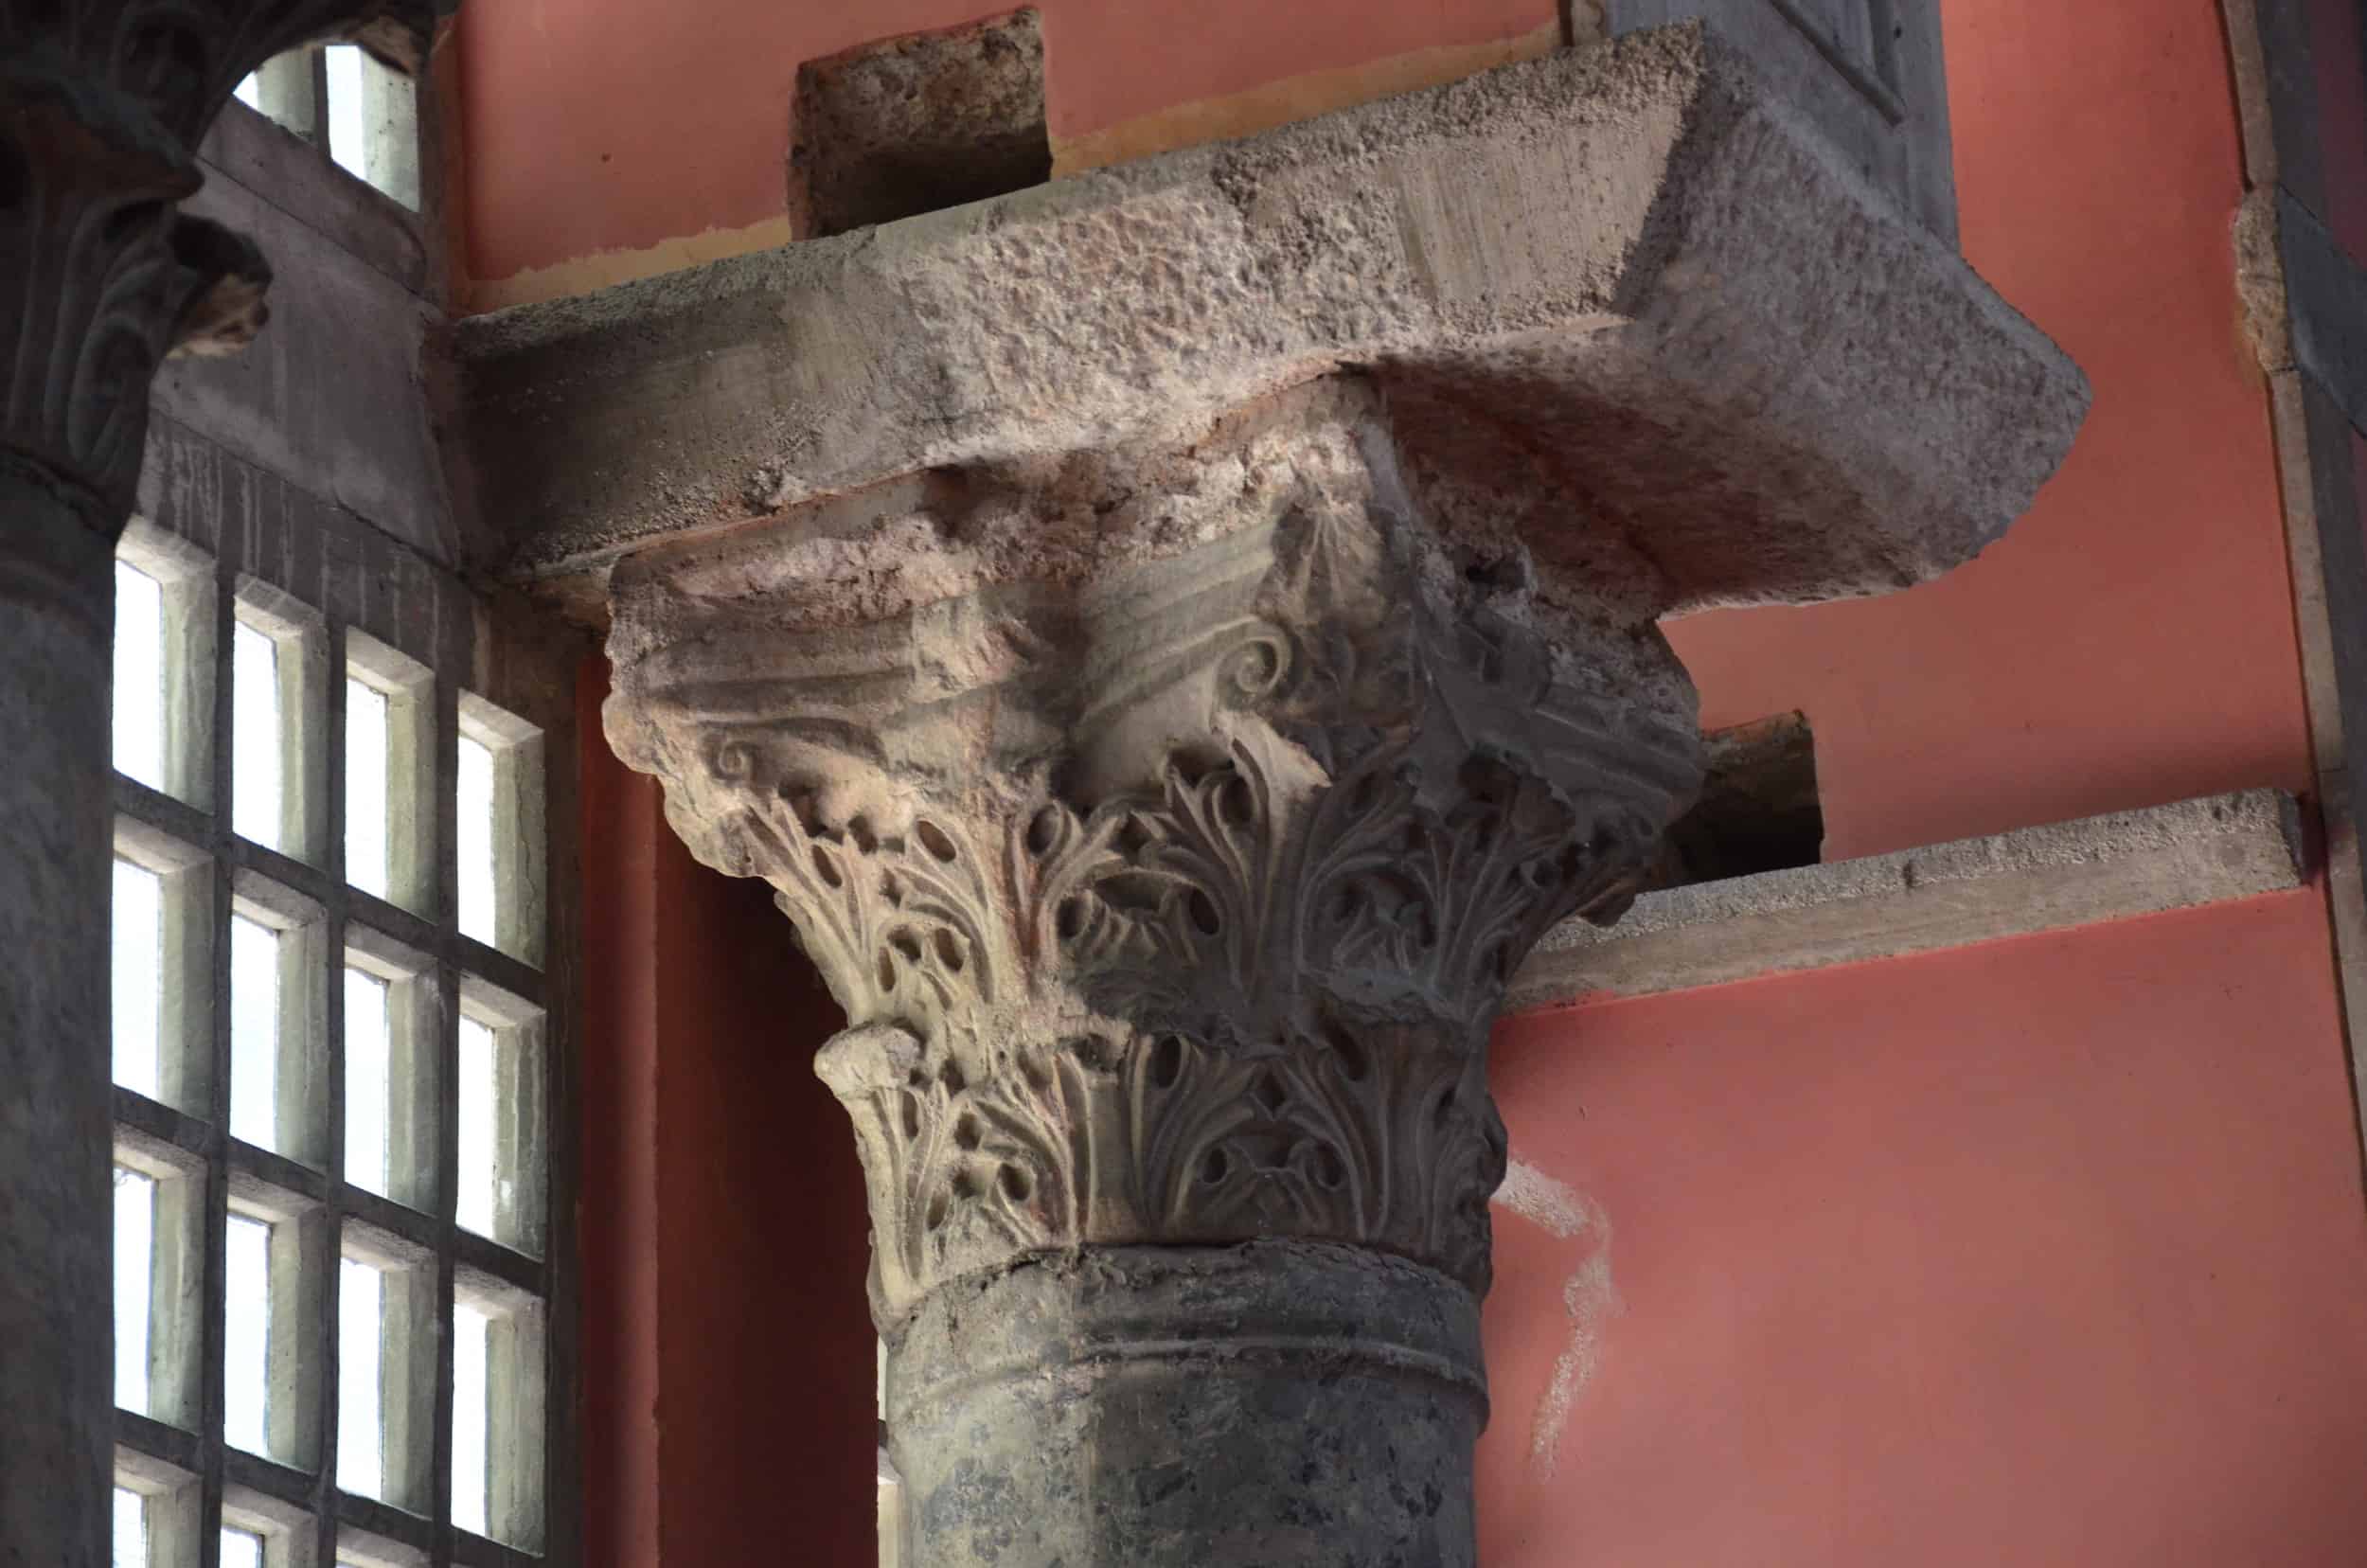 Column capital in the Kalenderhane Mosque in Şehzadebaşı, Istanbul, Turkey